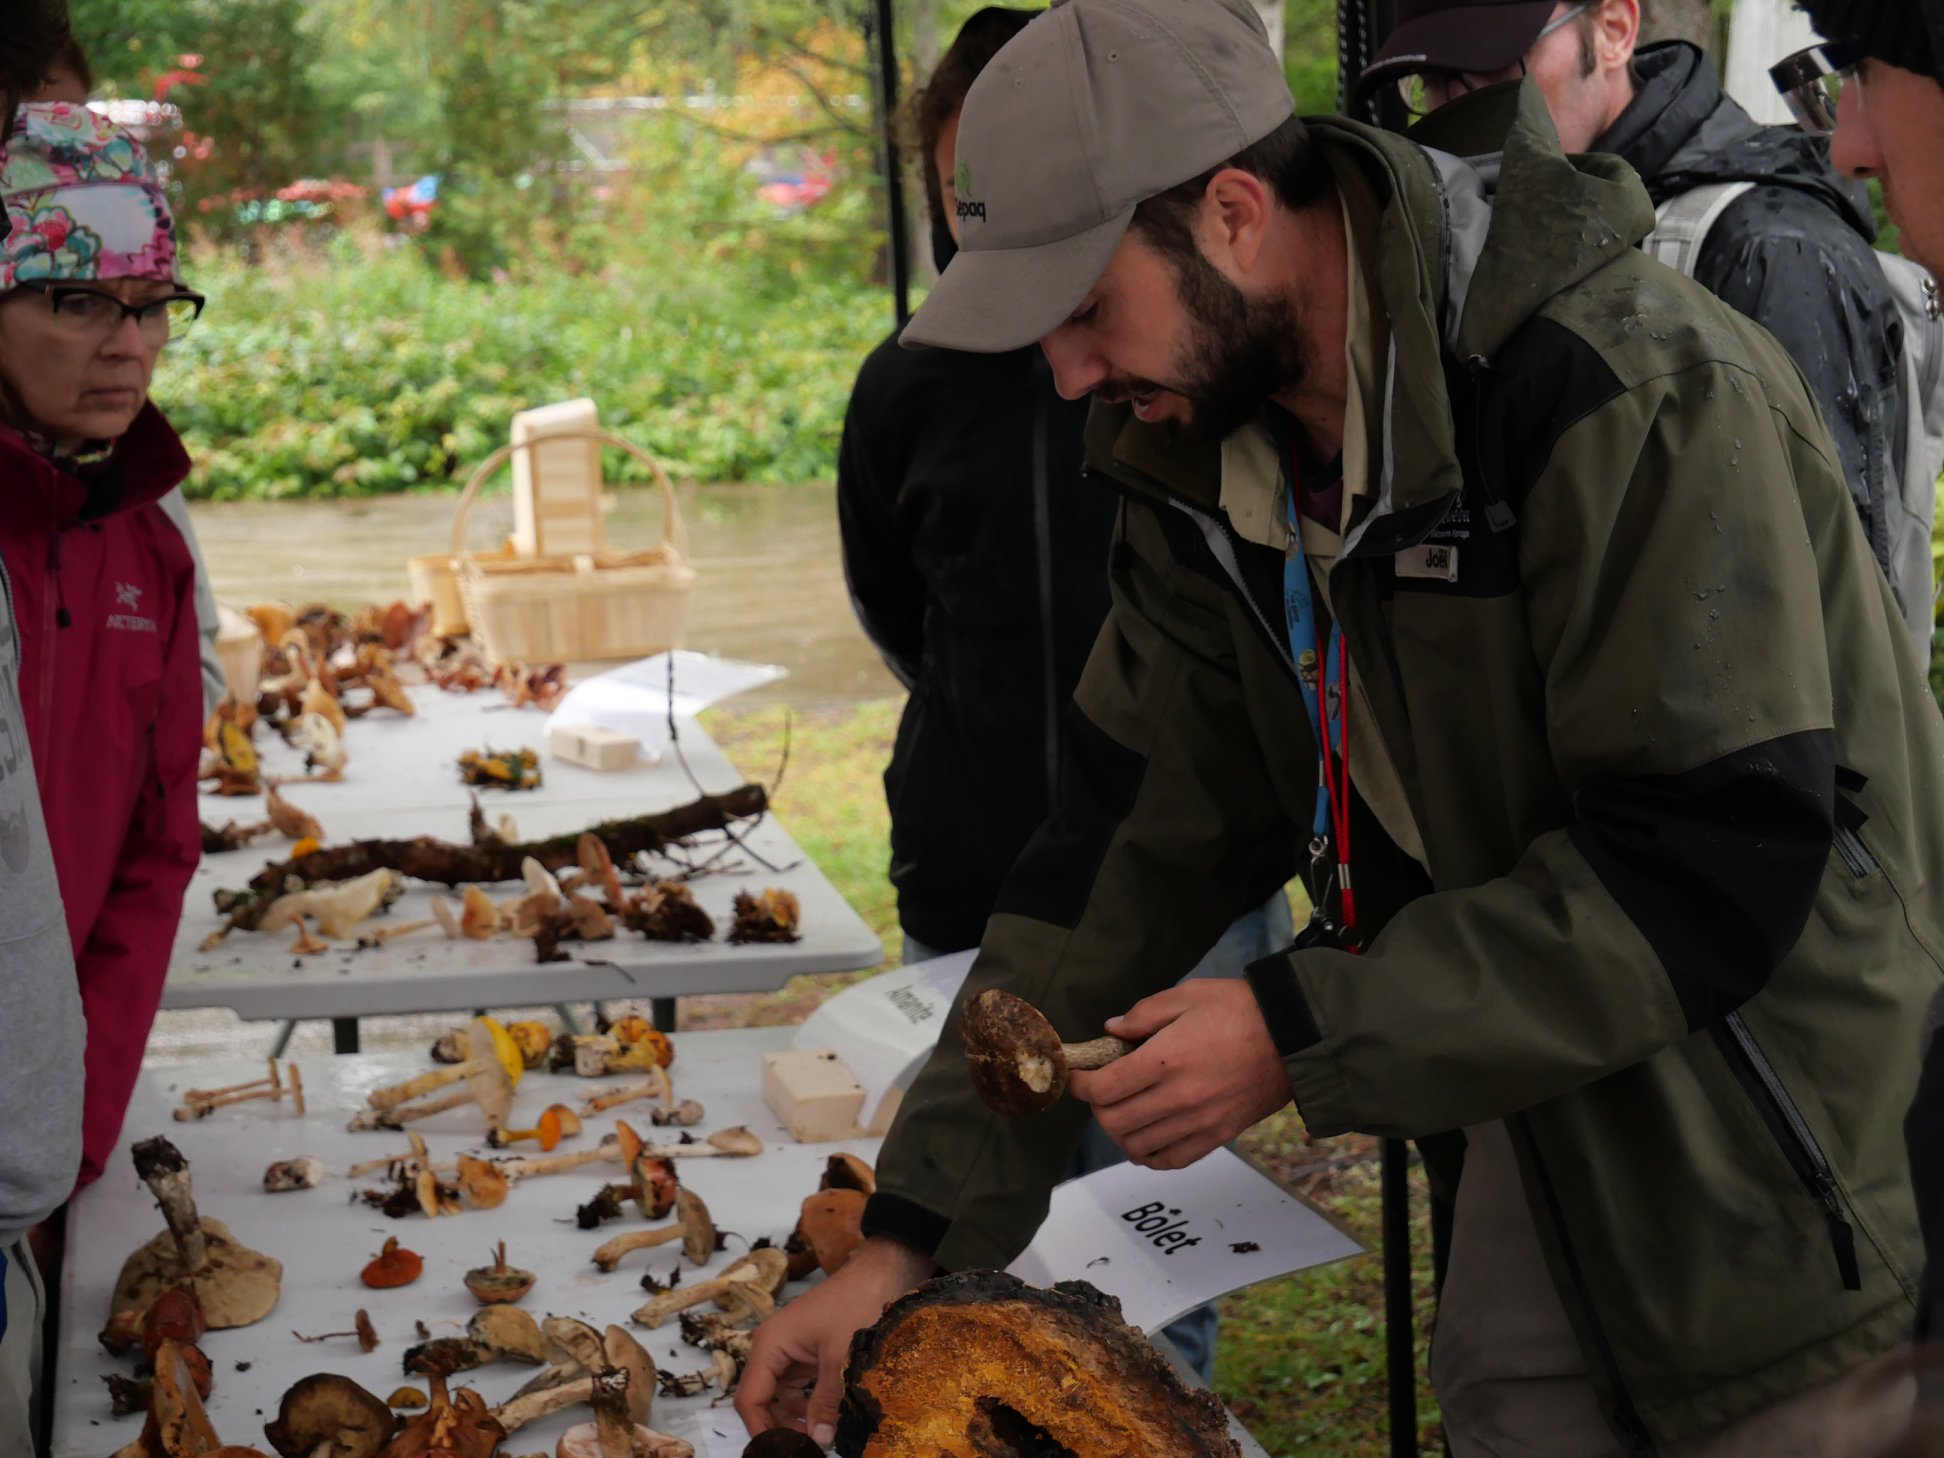 Une séance de cueillette de champignons permet parfois de ramener plusieurs espèces. Le spécialiste de la mycologie,Joël Caux, est à l'oeuvre pour identifier la récolte. Parc national de la Jacques-Cartier. Photo : xxx.